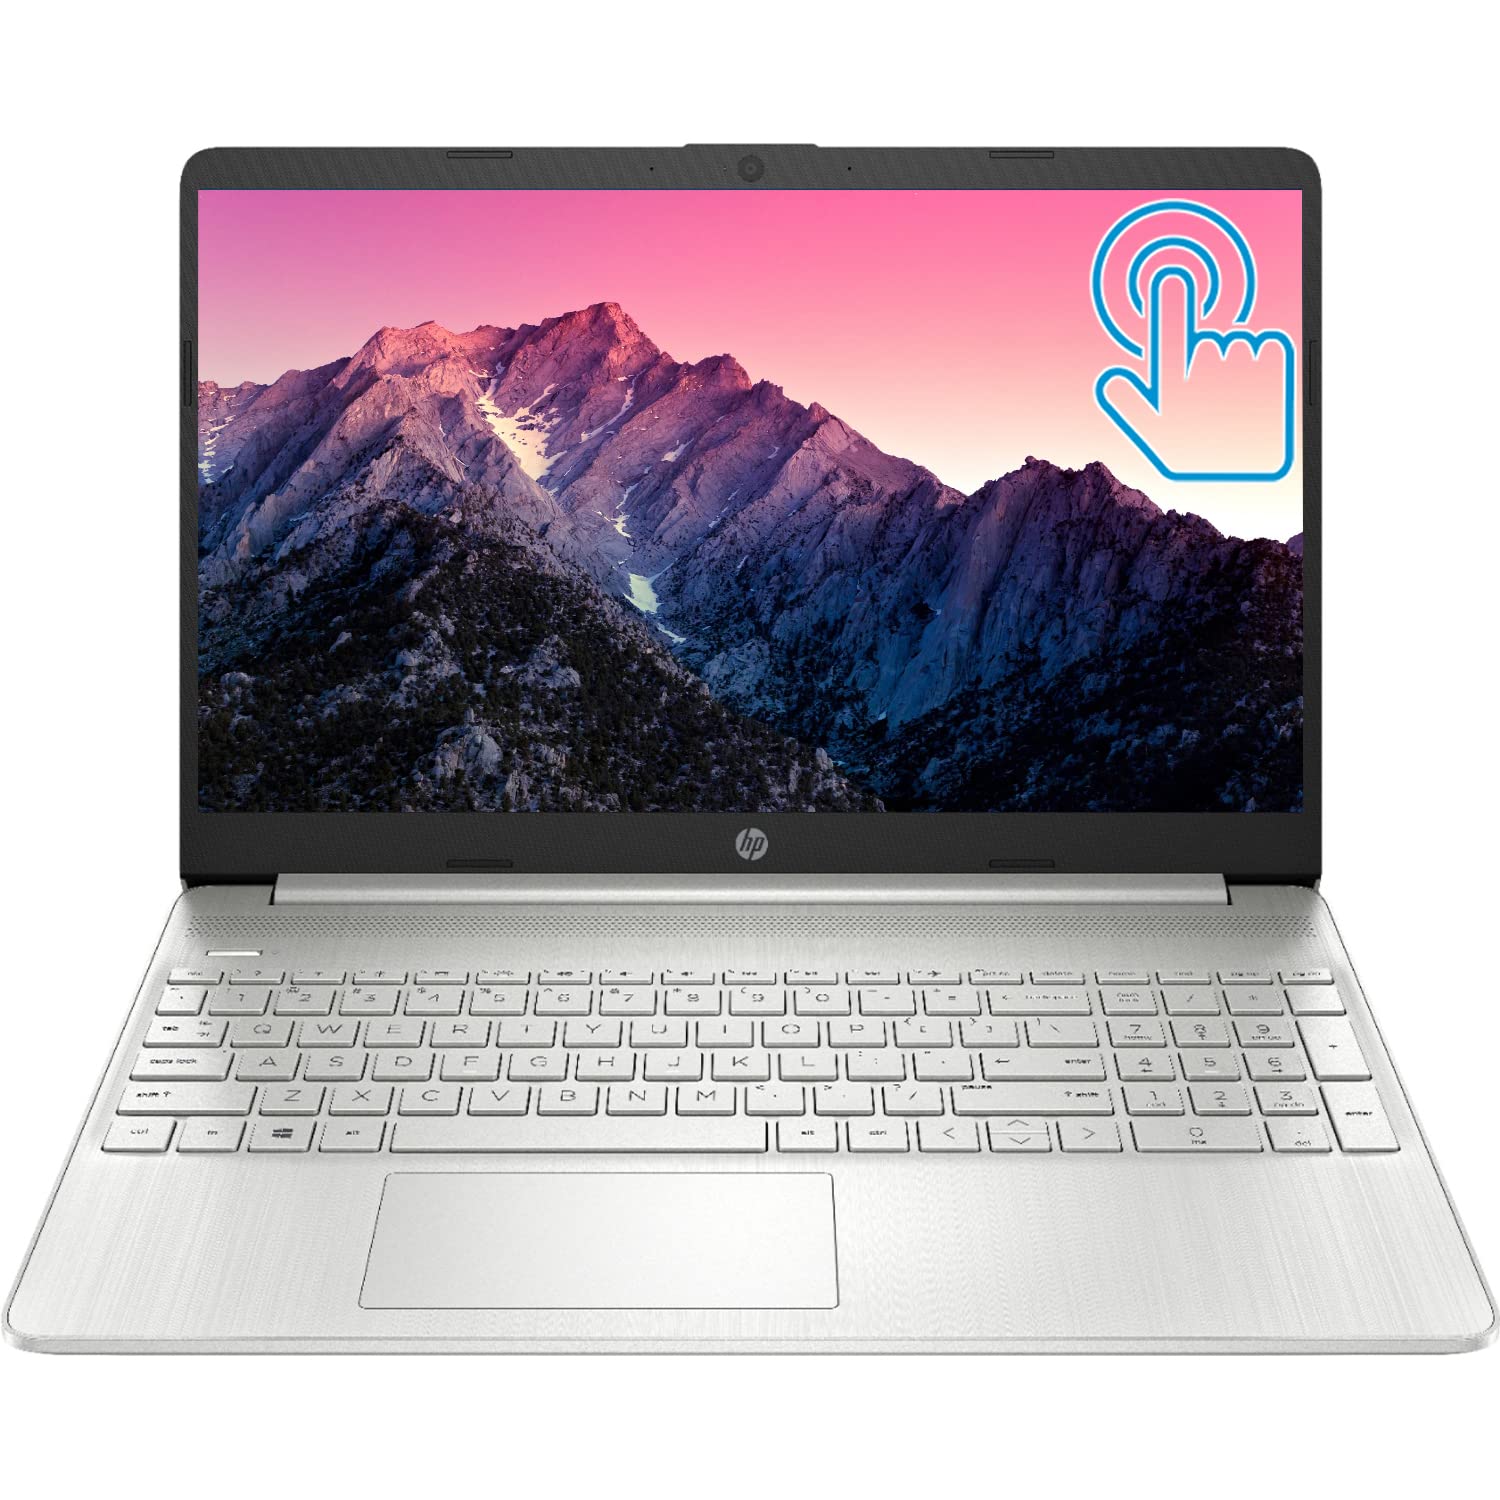 HP Pavilion Laptop (2022 Model), 15.6